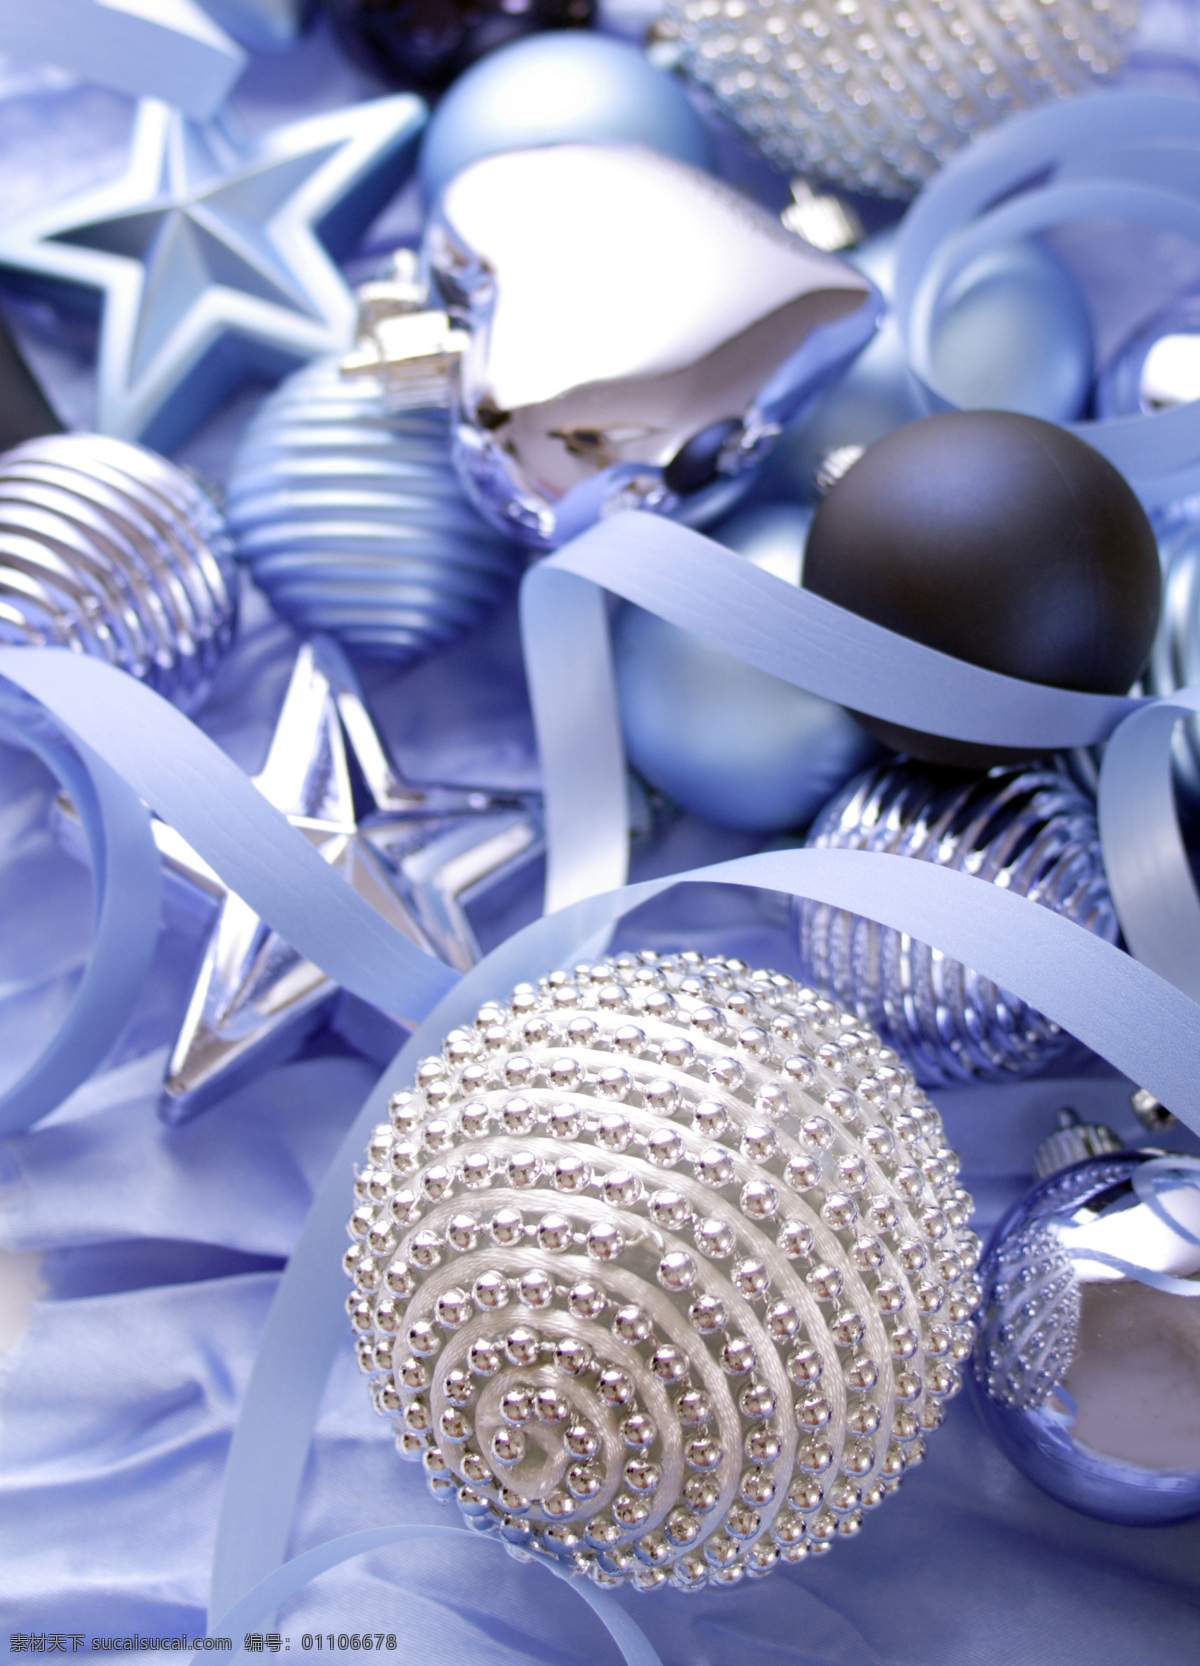 蓝色 圣诞节 装饰物 圣诞装饰物 蓝色丝带 圣诞球 五角星 圣诞节图片 生活百科